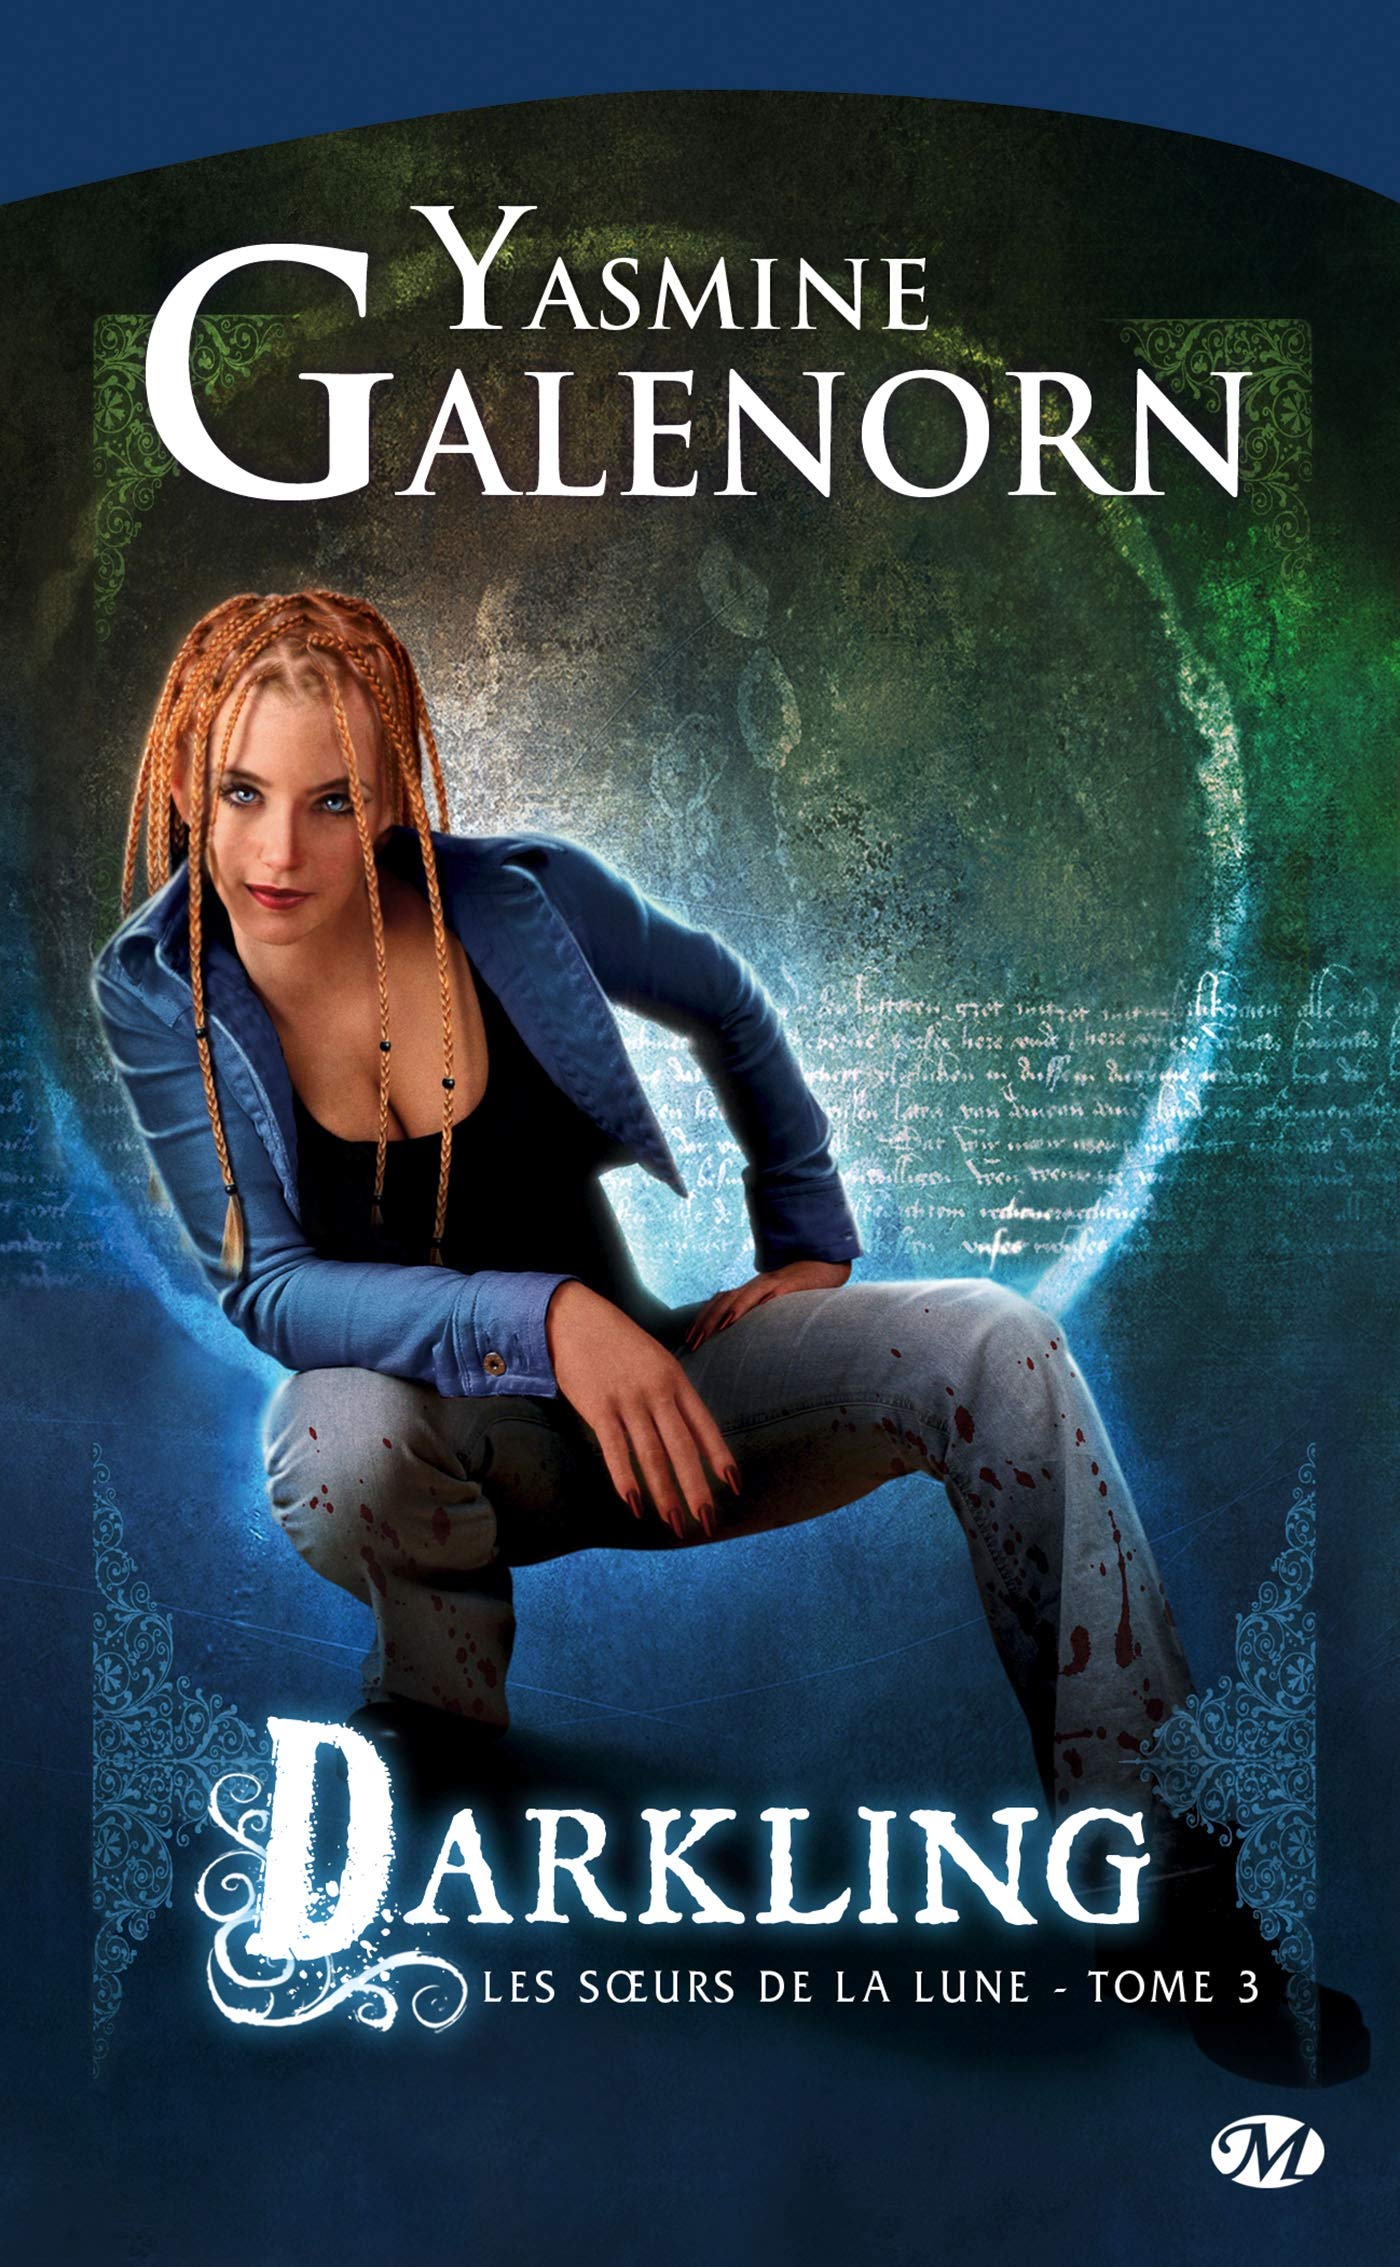 Les soeurs de la lune # 3 : Darkling - Yasmine Galenorn